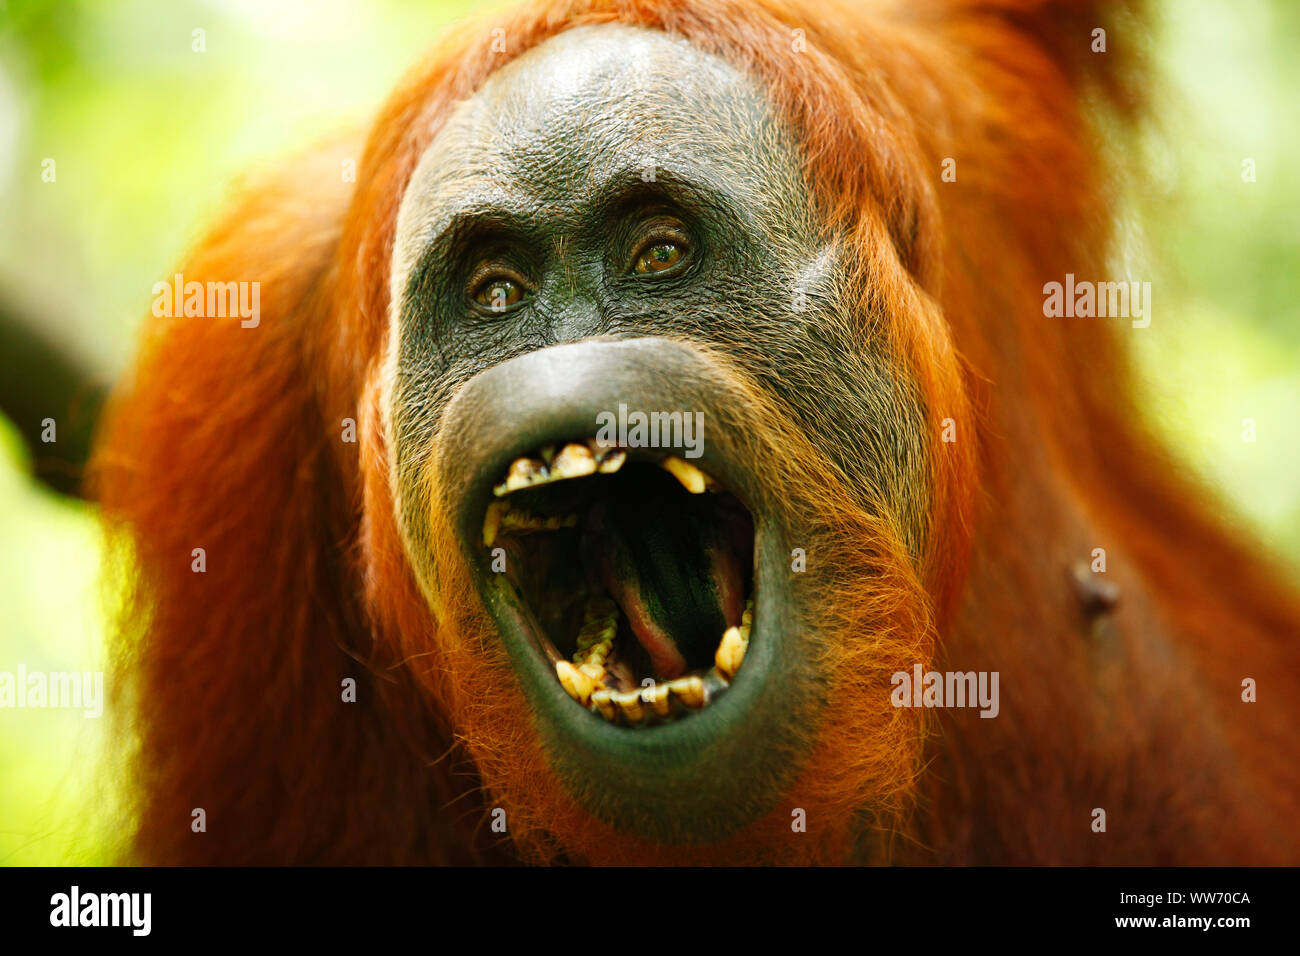 Sumatra, Bukit Lawang, orangutan Stock Photo